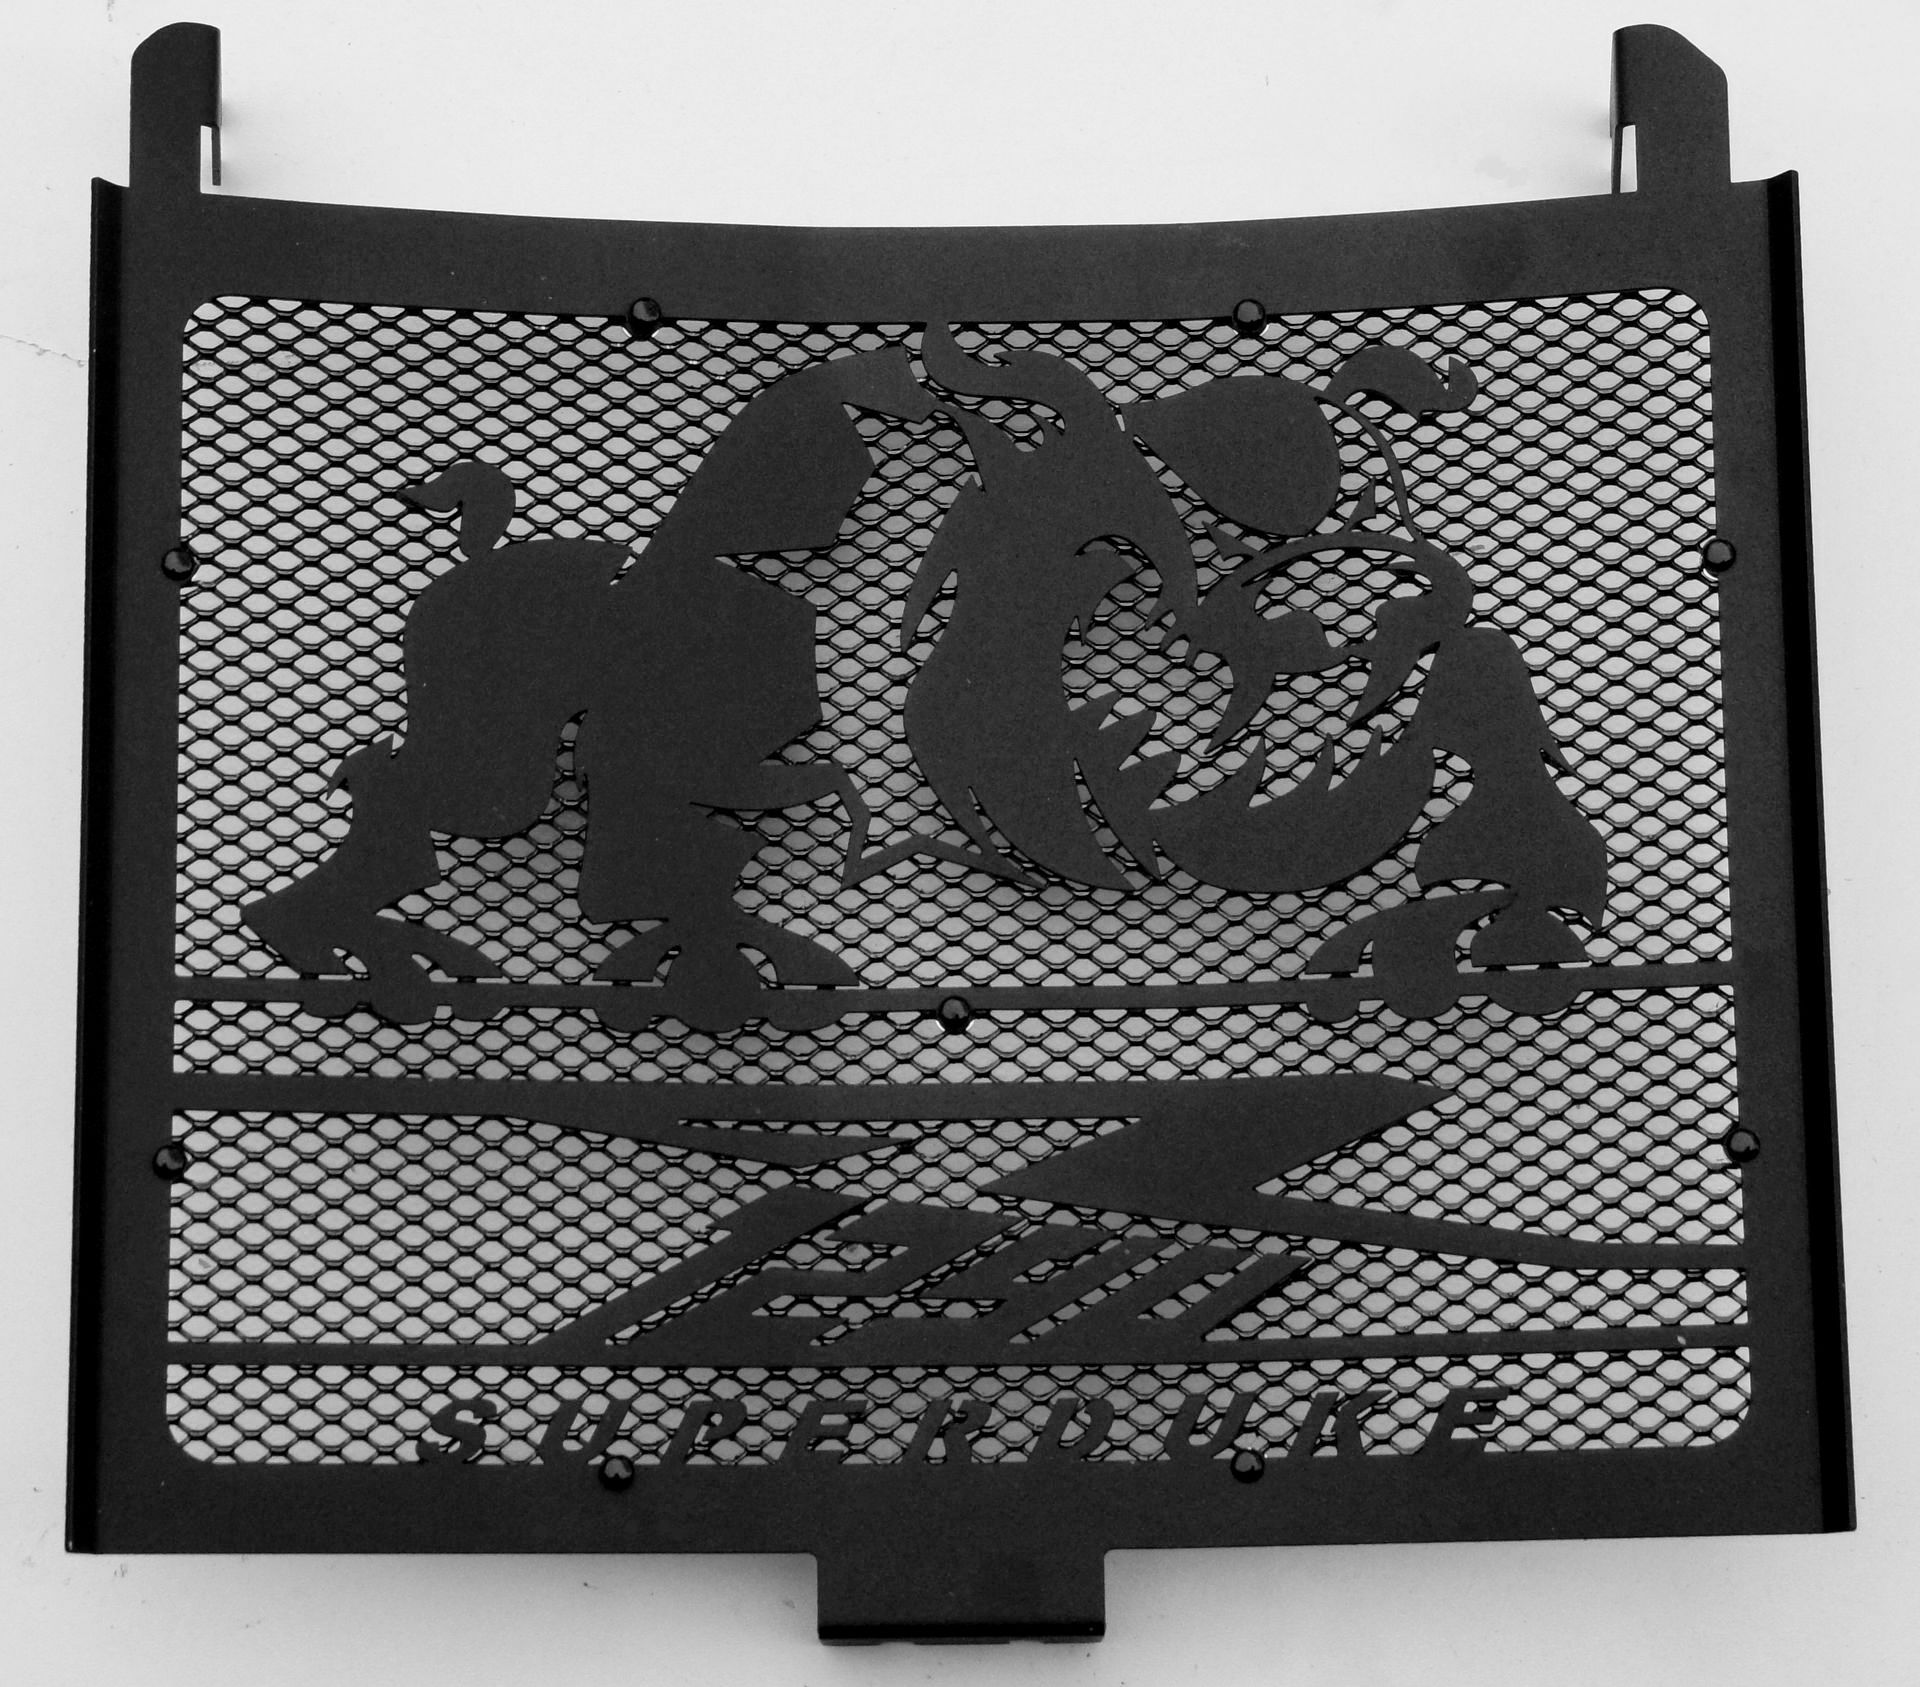  Cache radiateur/Grille de radiateur Noir Mat Z900 2016